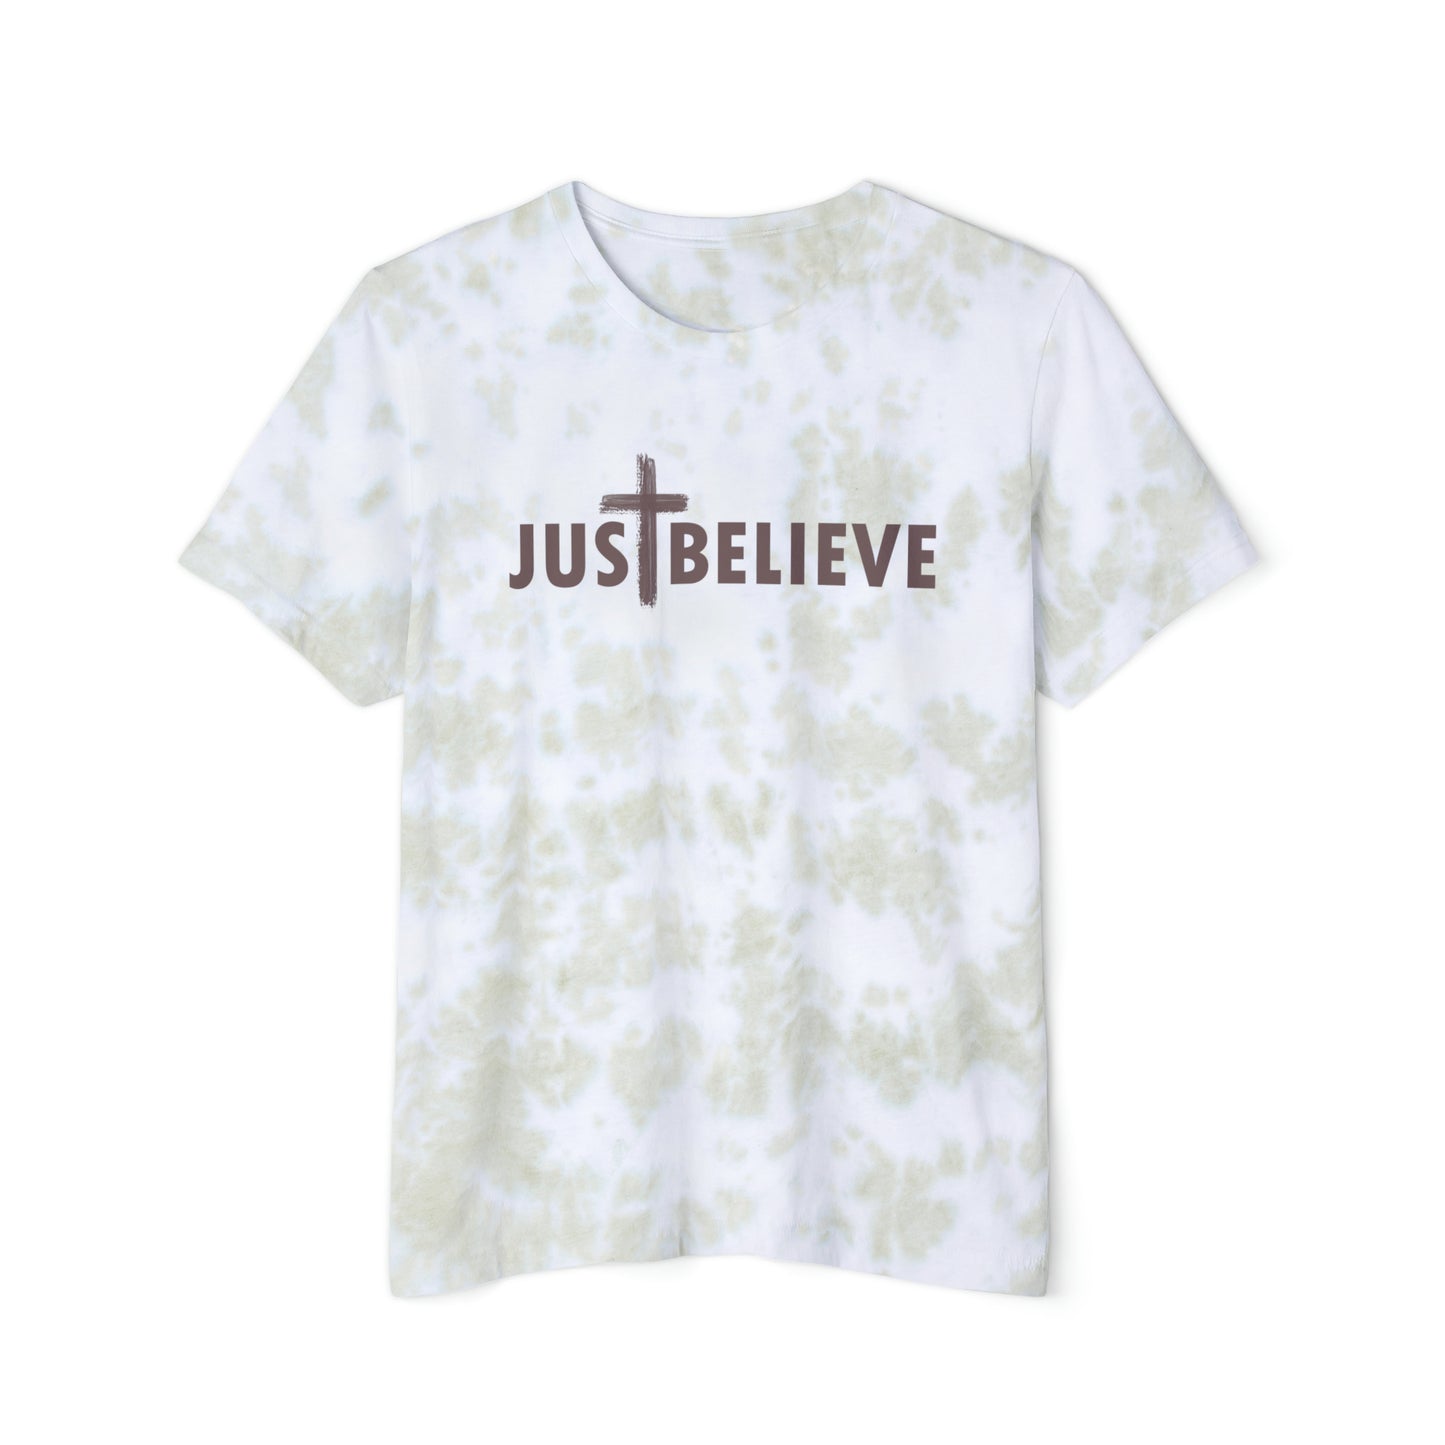 Just Believe - Christian T shirt, Christian Message